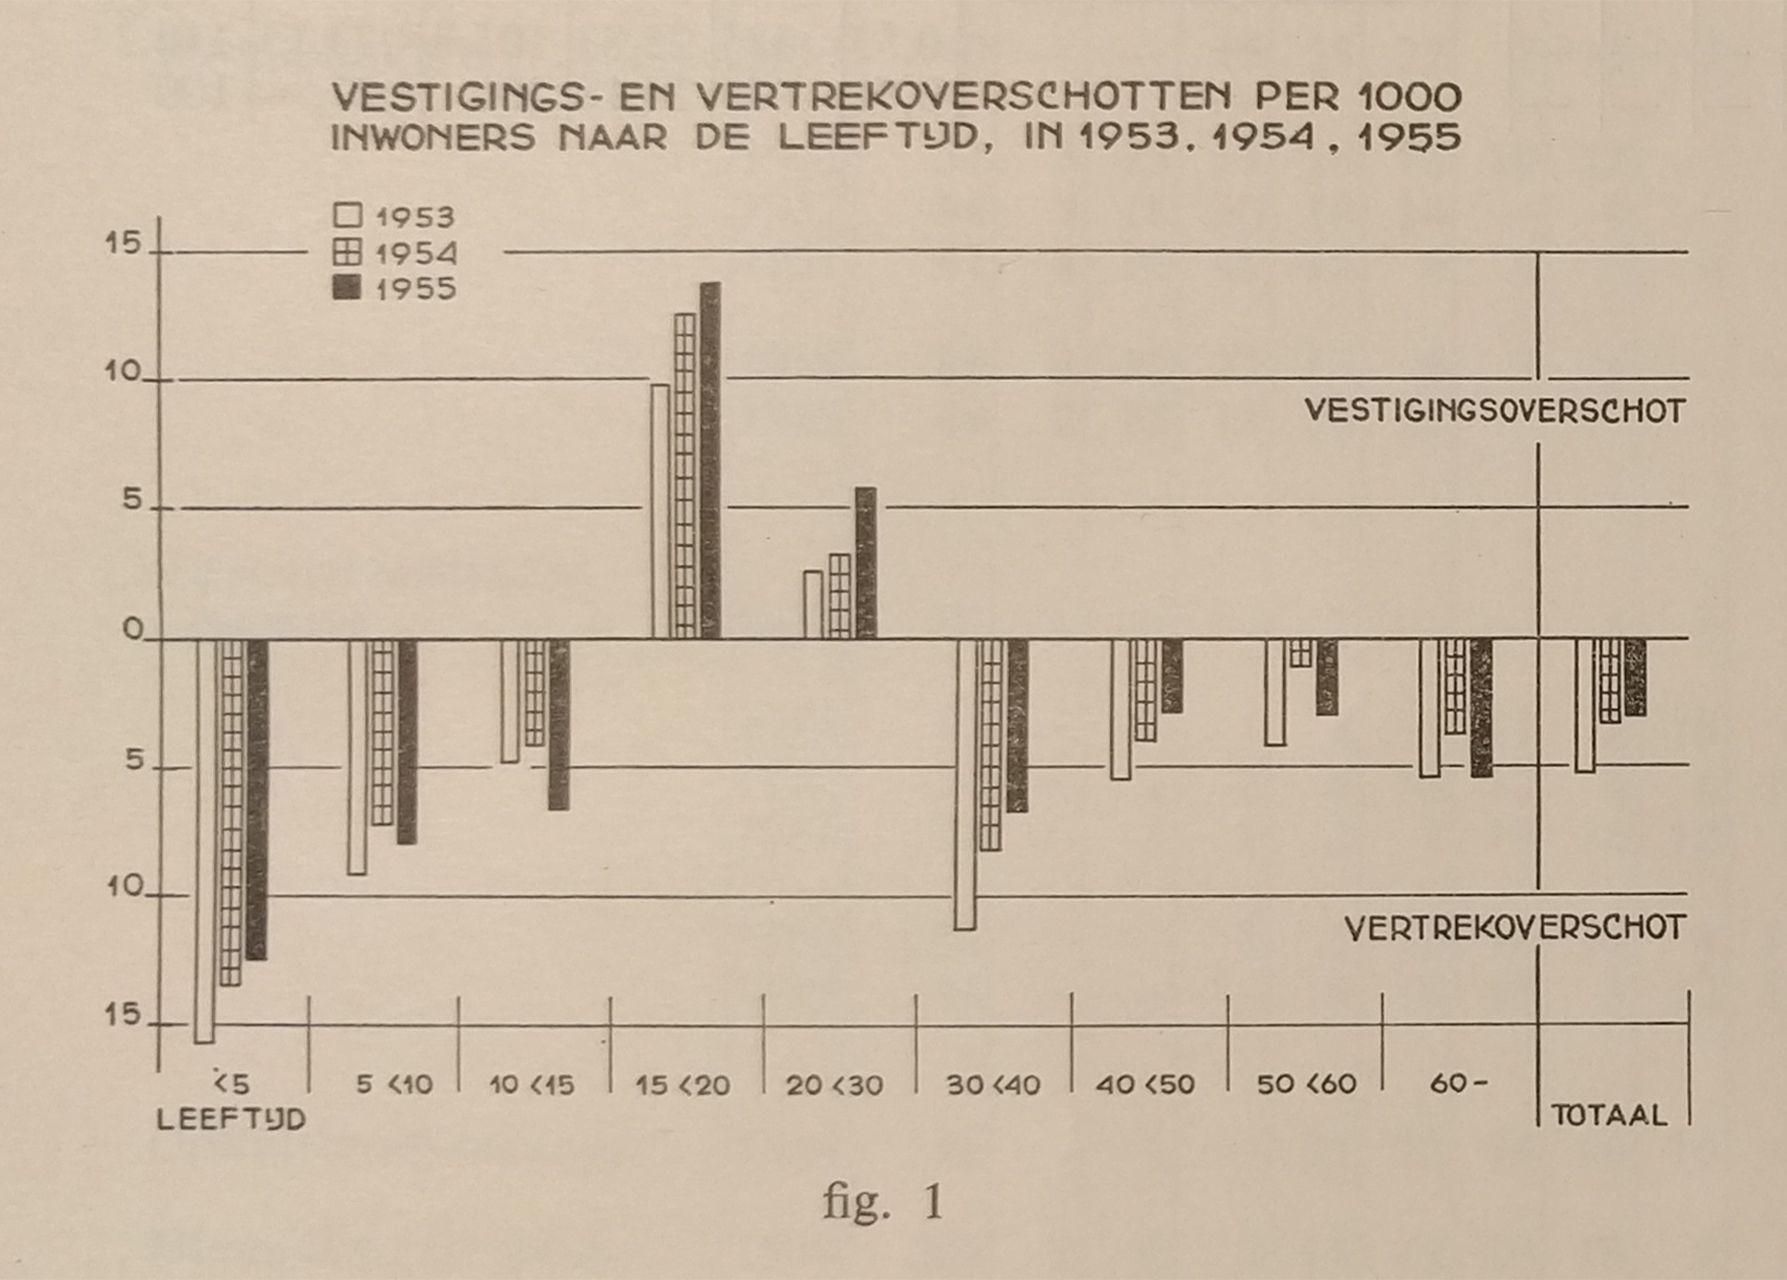 Vestigings en vertrkoverschotten per 1000 inwoners naar de leeftijd, kwartaalberichten 1955.